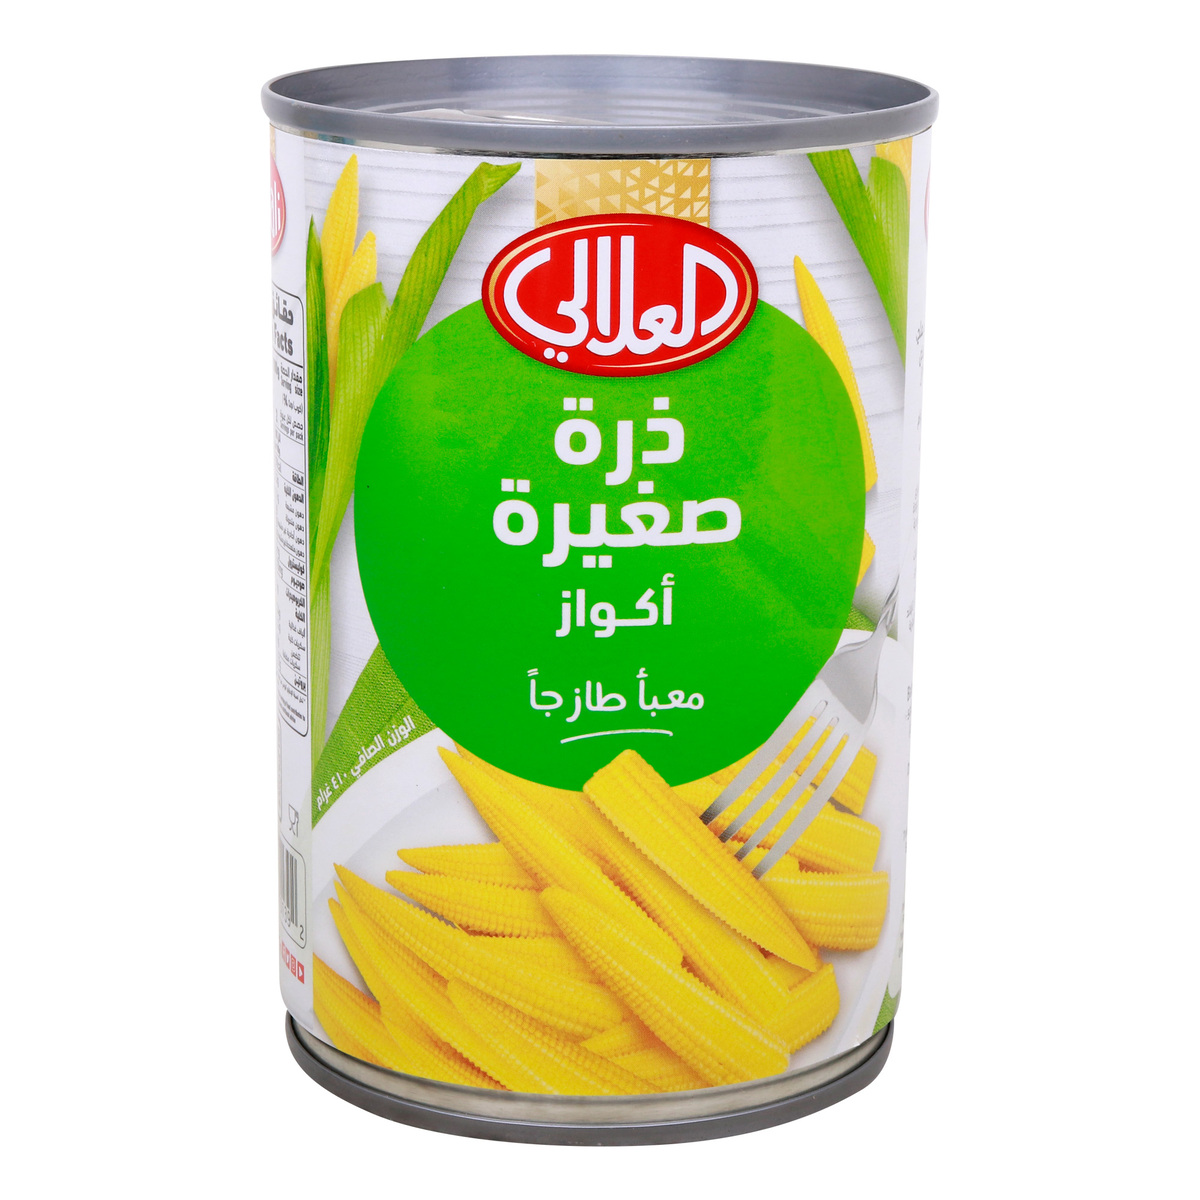 Al Alali Baby Corn Cobs 410 g